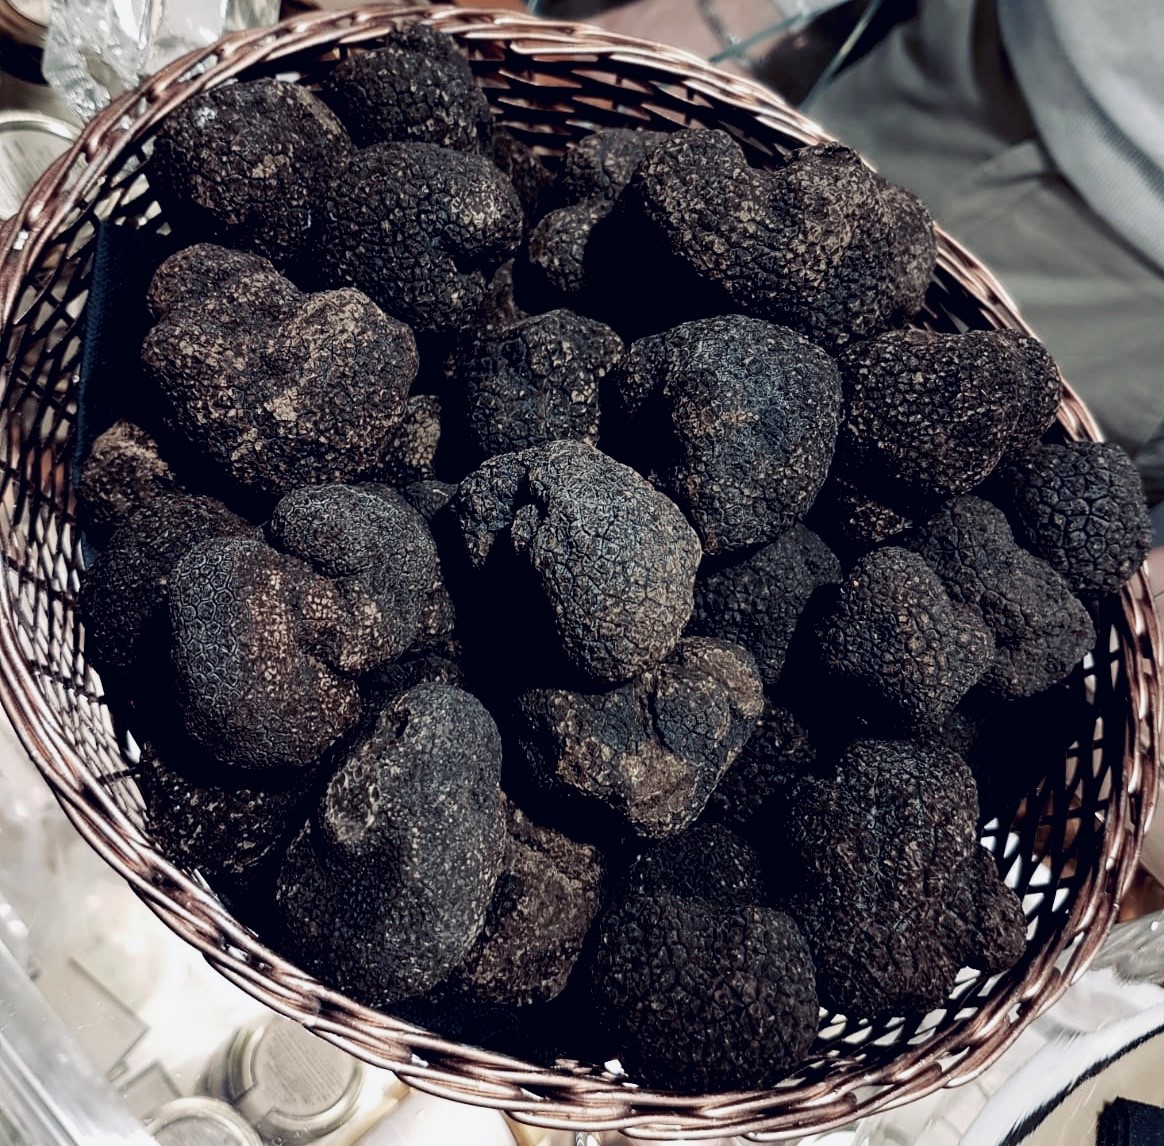 Beaucoup plus qu'un simple aliment, la truffe est toute une culture.